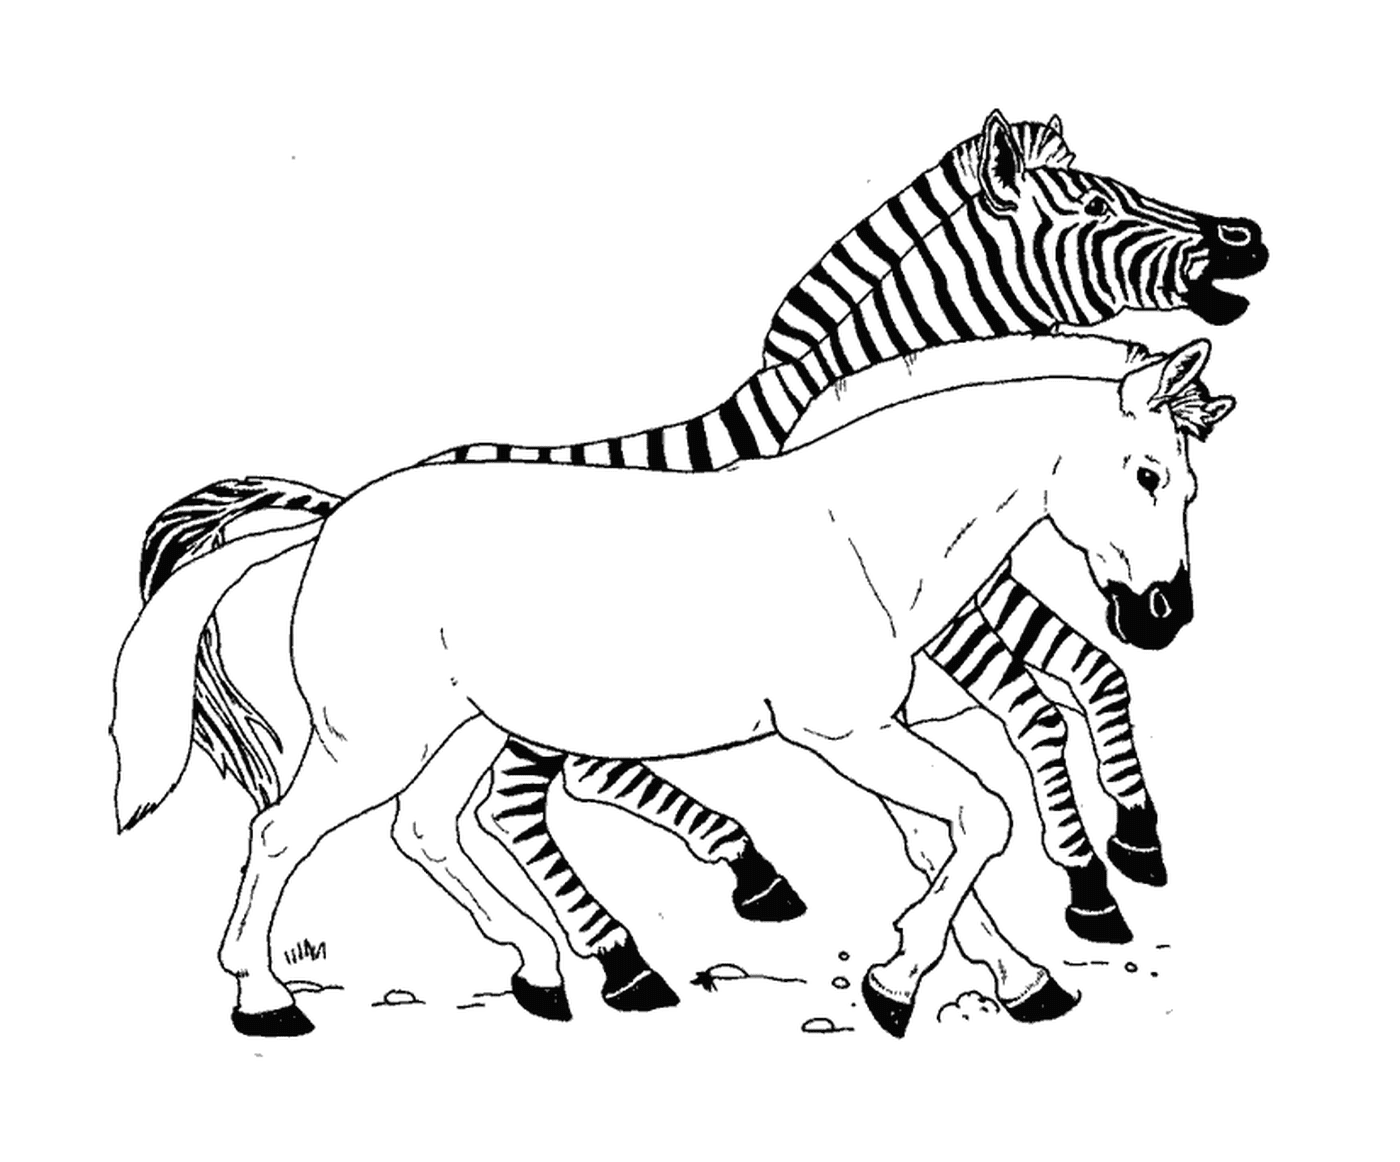  Crazy race between zebras 